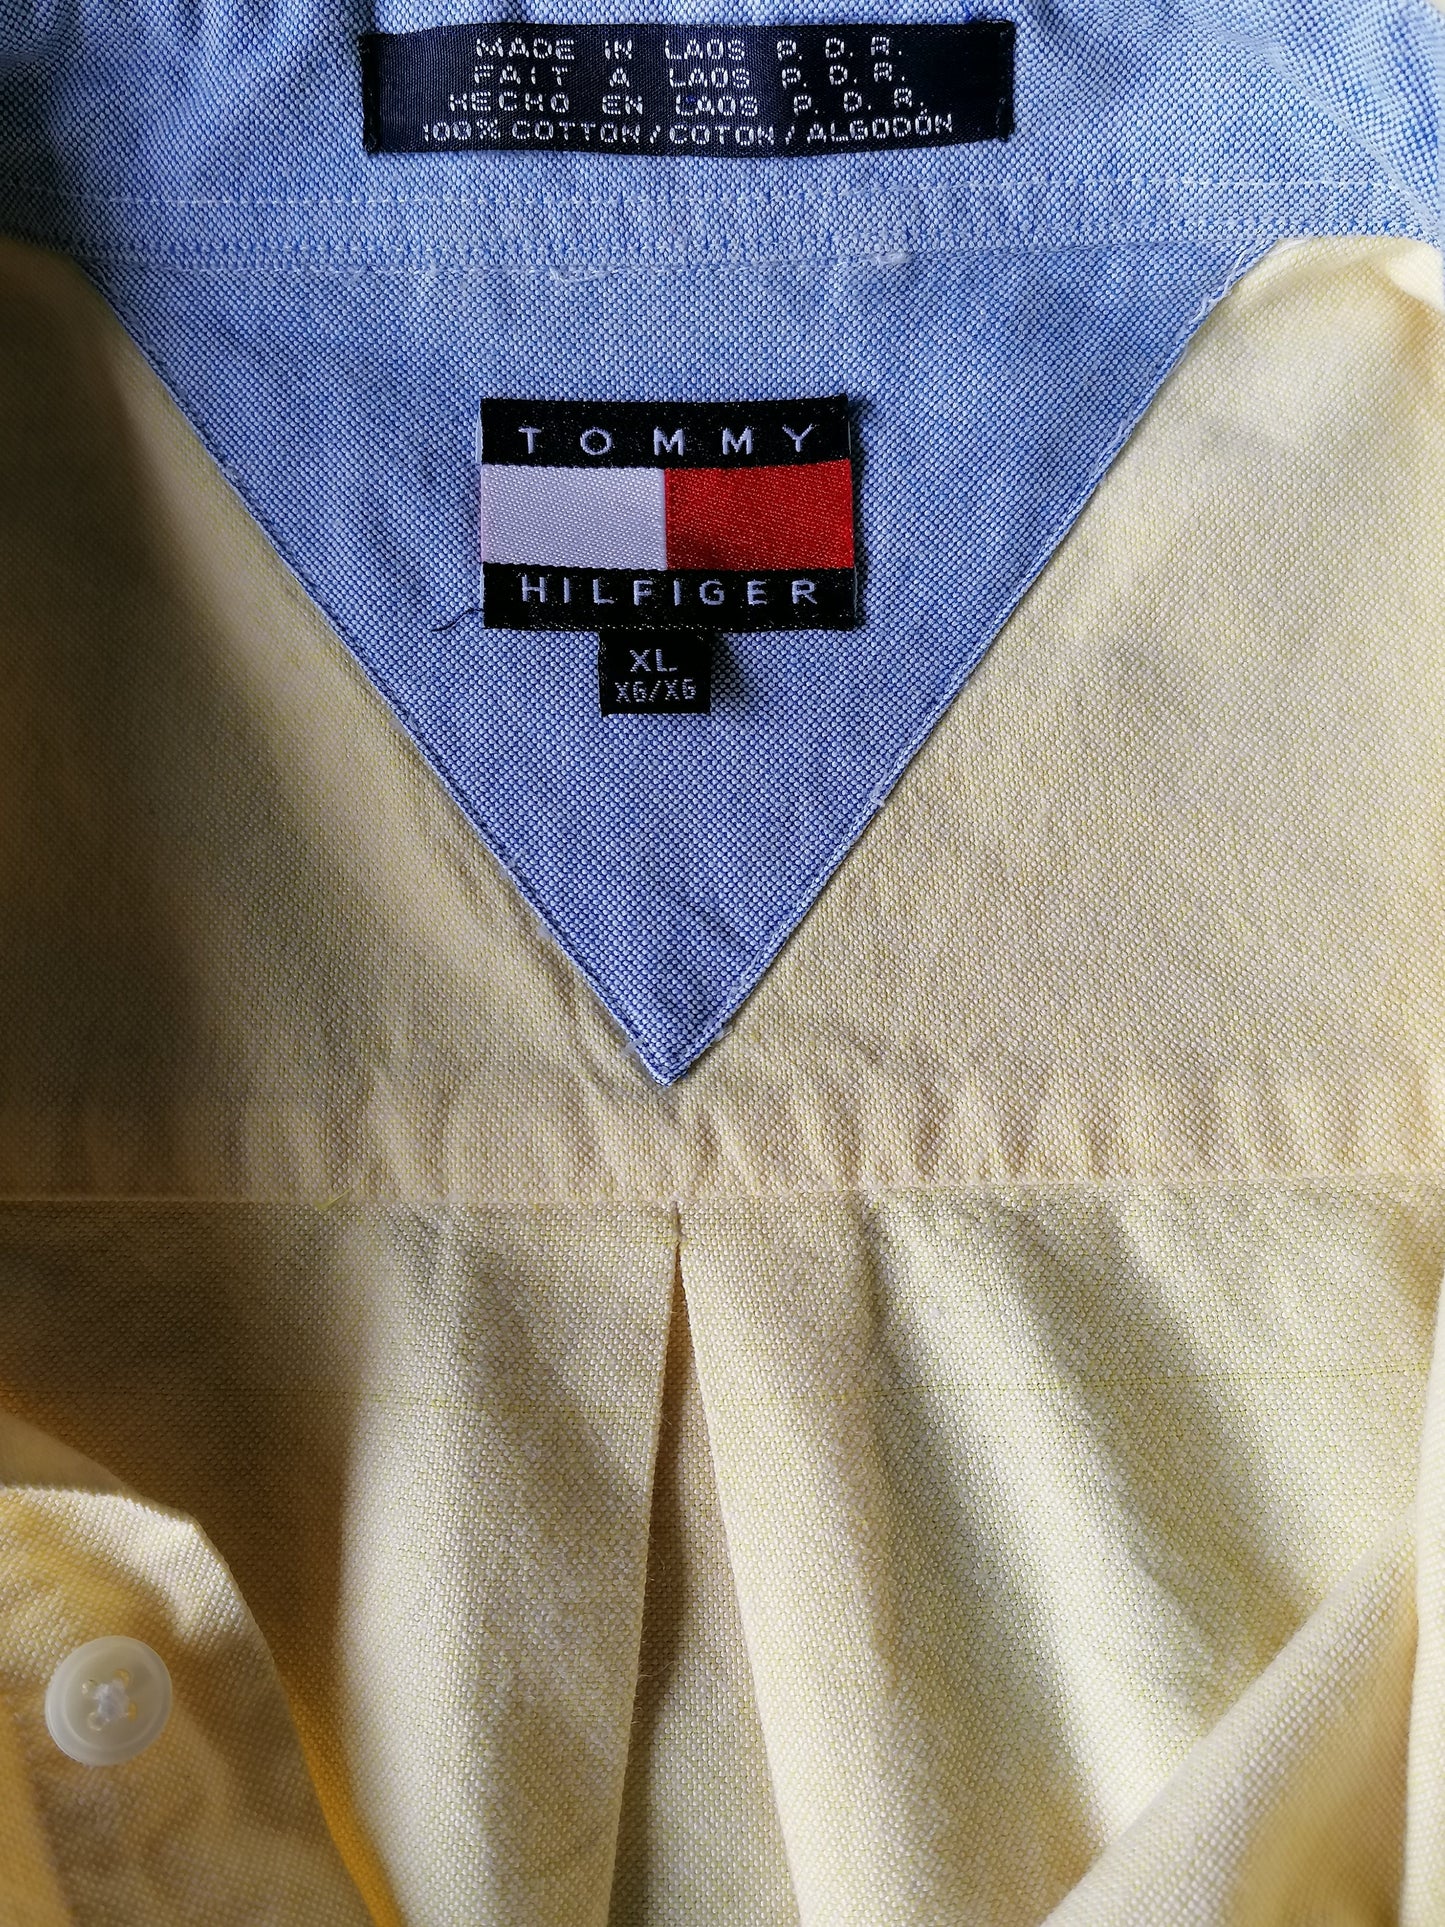 Vintage Tommy Hilfiger Hemd. Gelb gefärbt. Größe XL / XXL